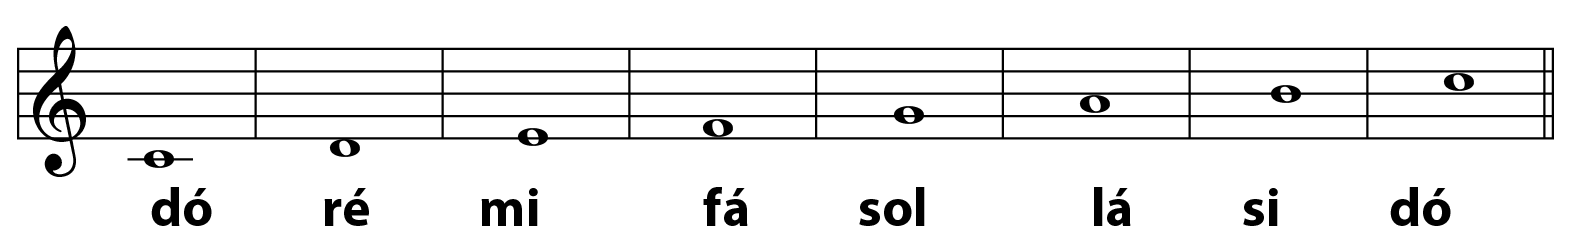 Ilustração. Pentagrama musical com uma clave de sol e cinco linhas  horizontais divididas em oito conjuntos de espaços separados por linhas verticais. Há indicações sequenciais das notas da escala musical, que se iniciam abaixo das linhas e vão até o segundo espaço horizontal antes do topo, e abaixo estão escritos os nomes das notas correspondentes:  dó, ré, mi, fá, sol, lá, si, e dó.